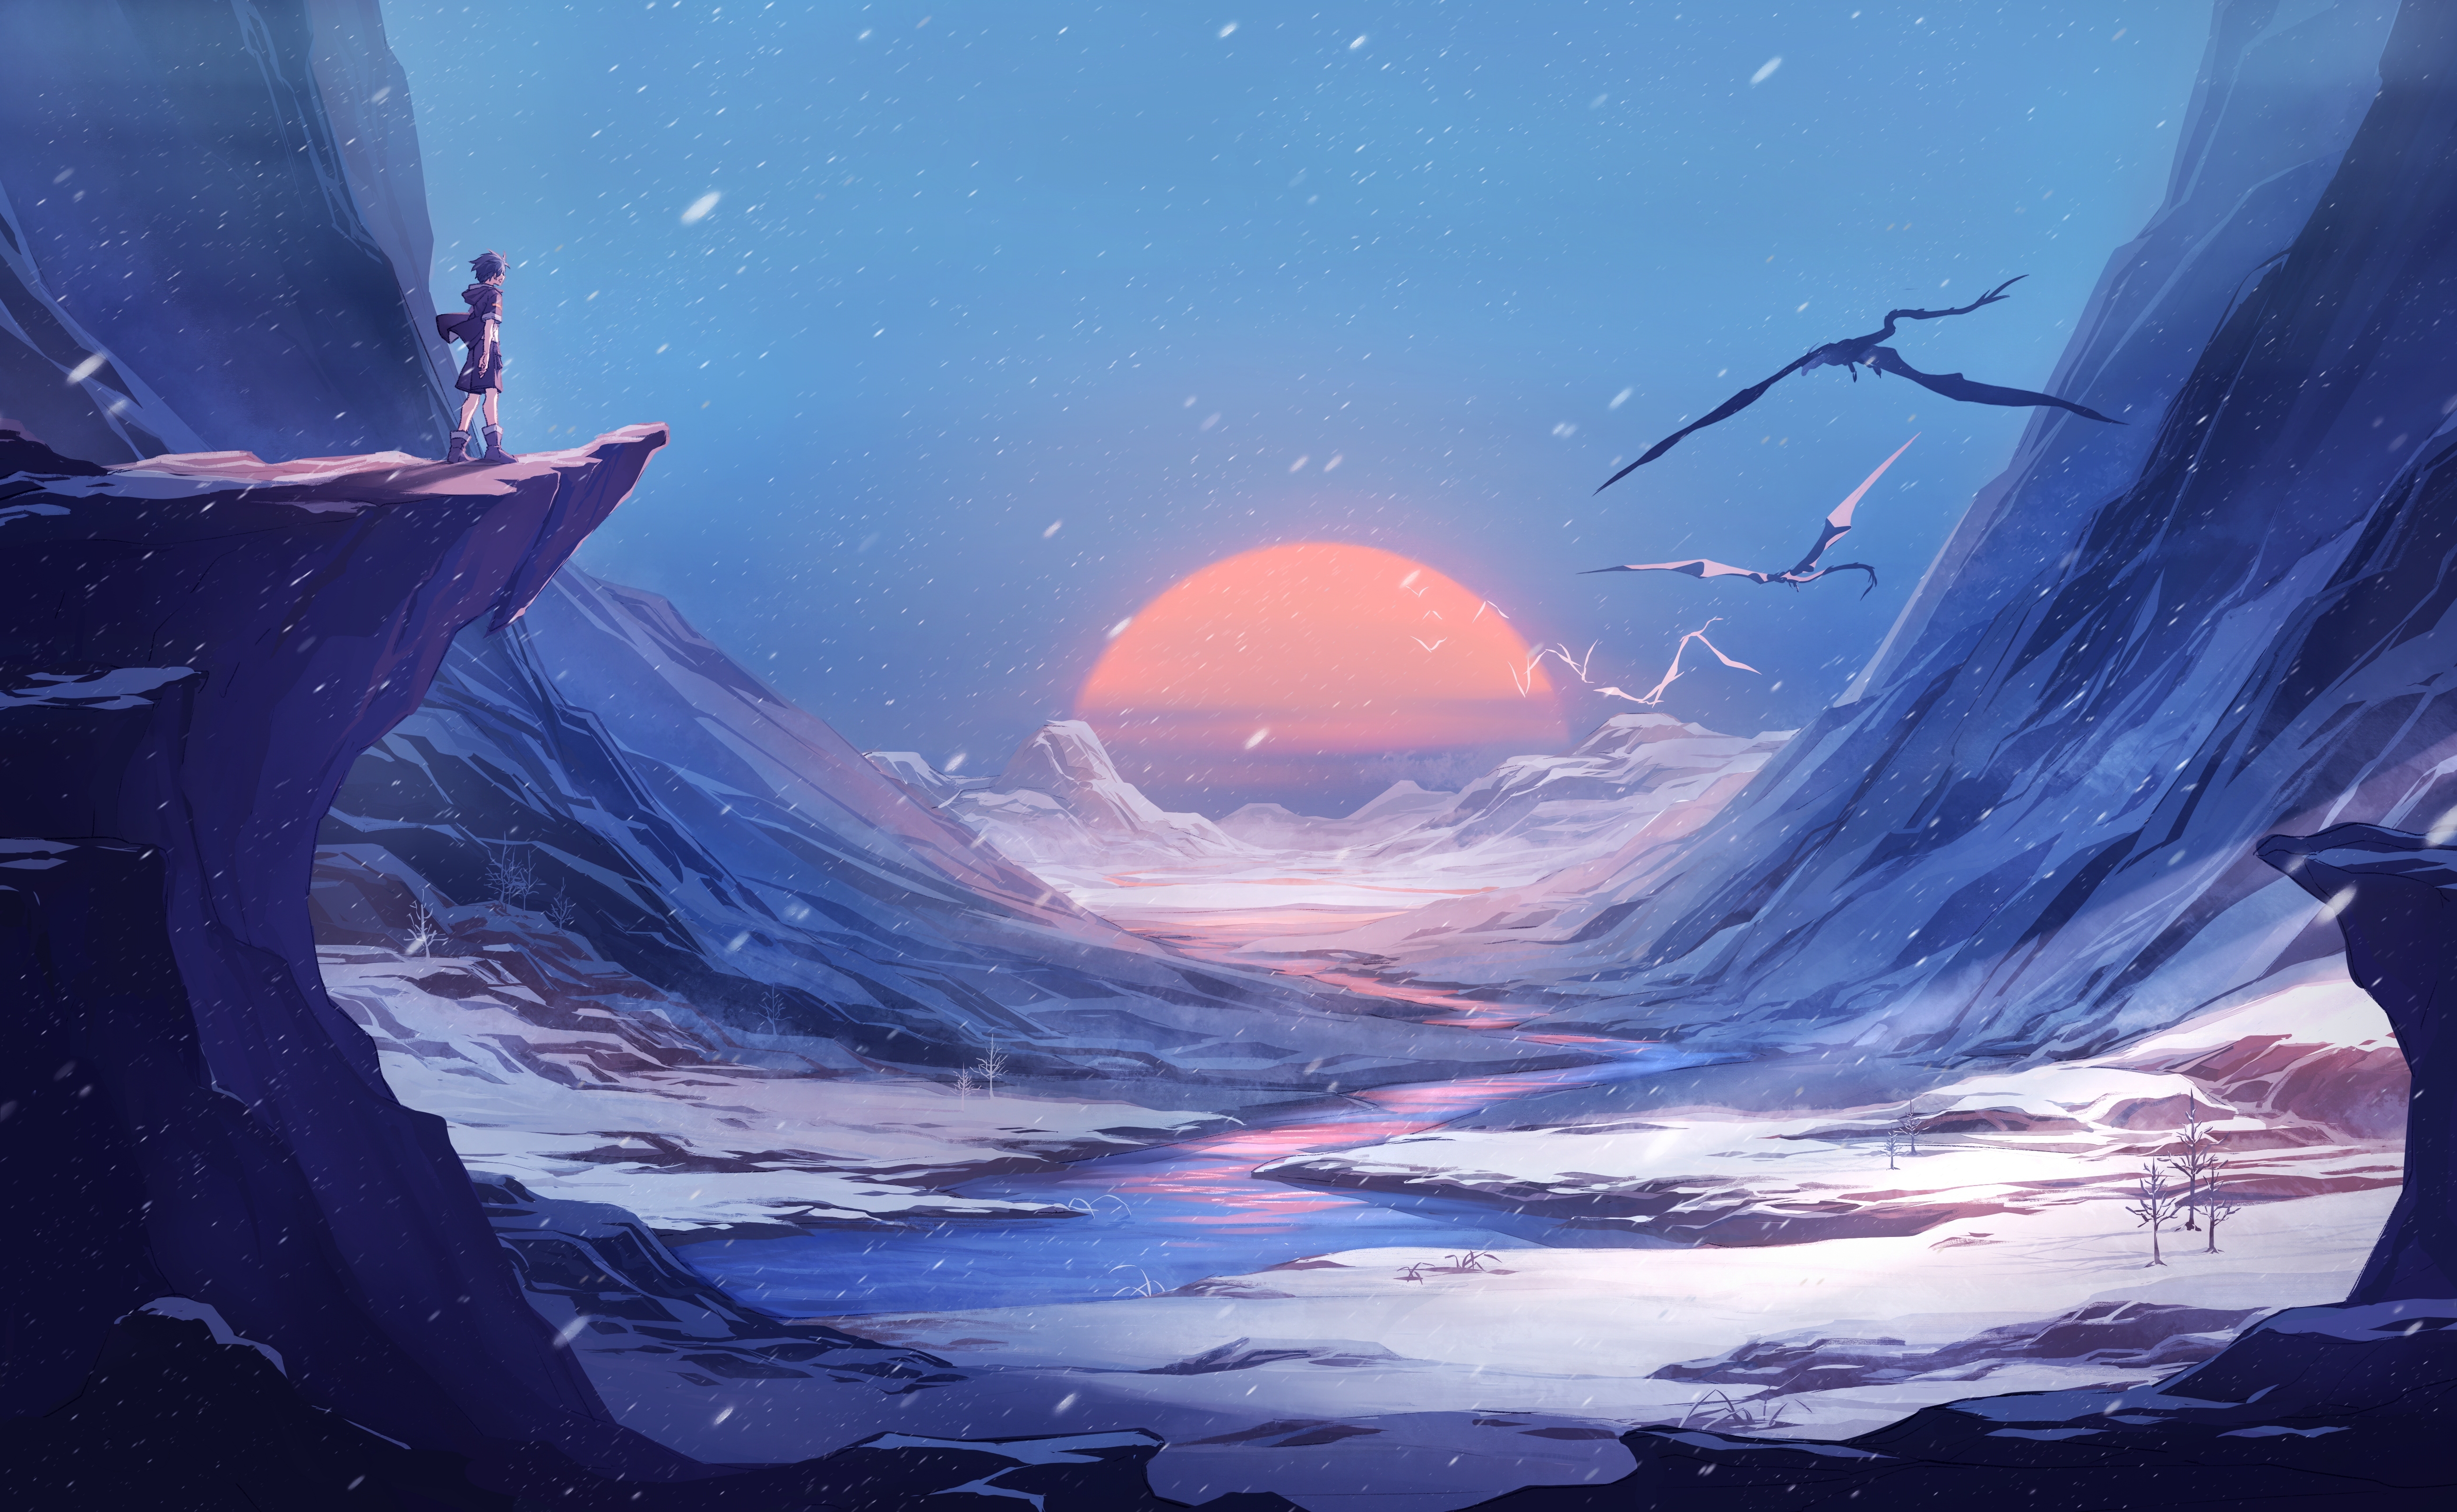 Wallpaper Fantasy World, Cliff, Scenic, Anime Boy, Landscape, Snow, Winter:5200x3200